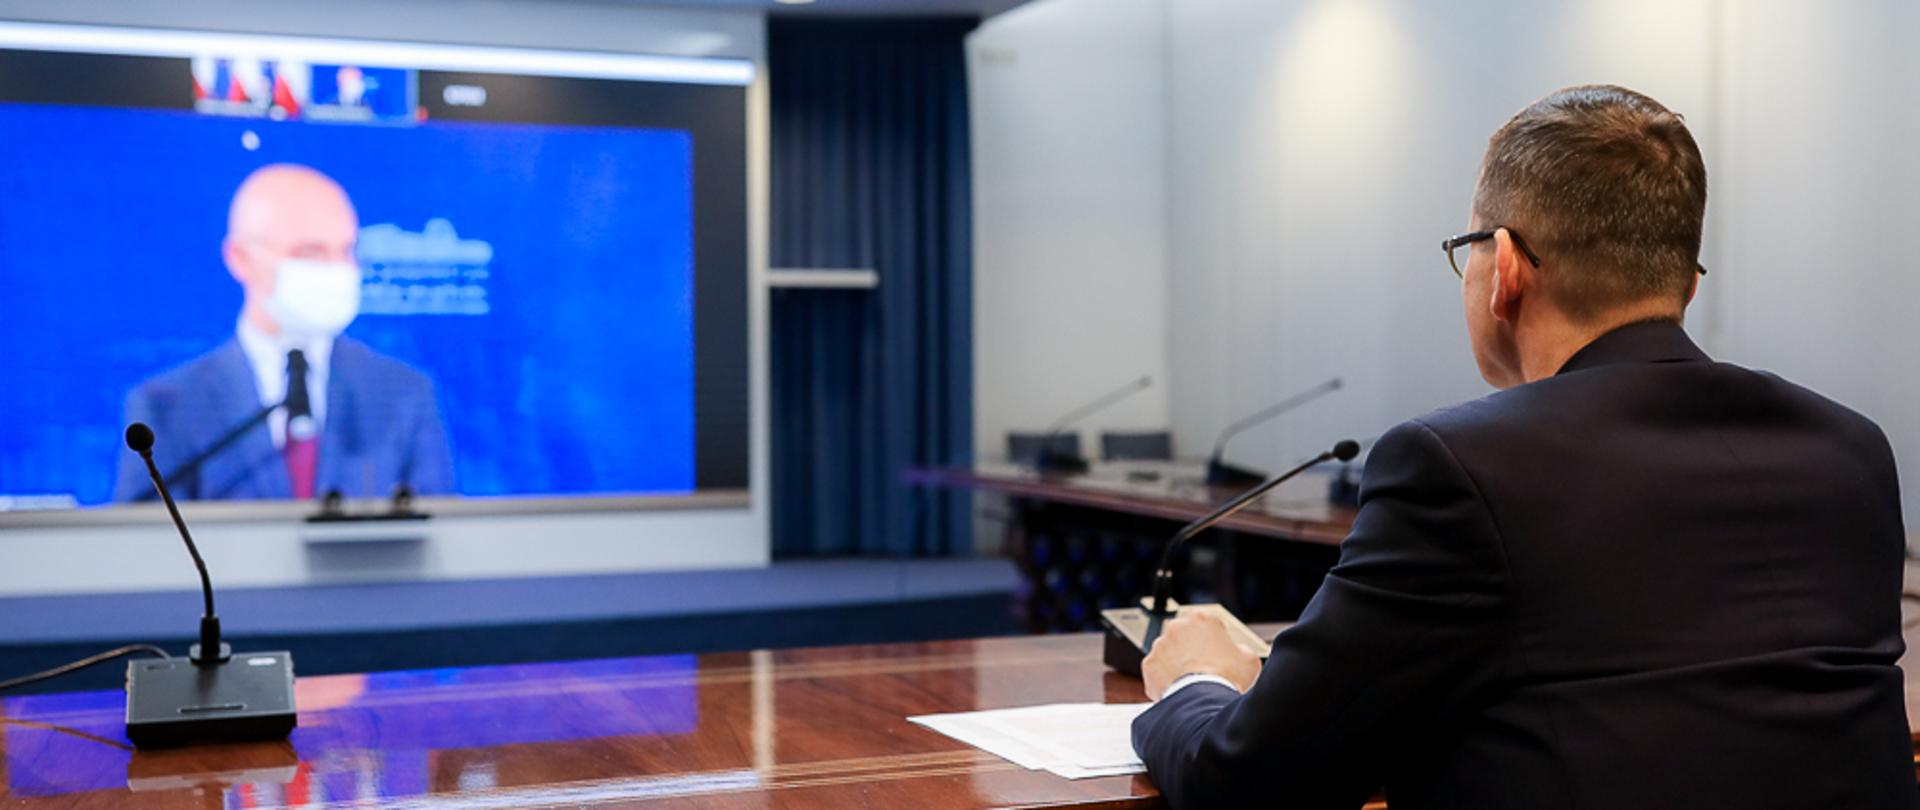 Na pierwszym planie premier Mateusz Morawiecki siedzi przy stole, na którym ustawiony jest mikrofon. W tle na ekranie widać ministra Michała Kurtykę.